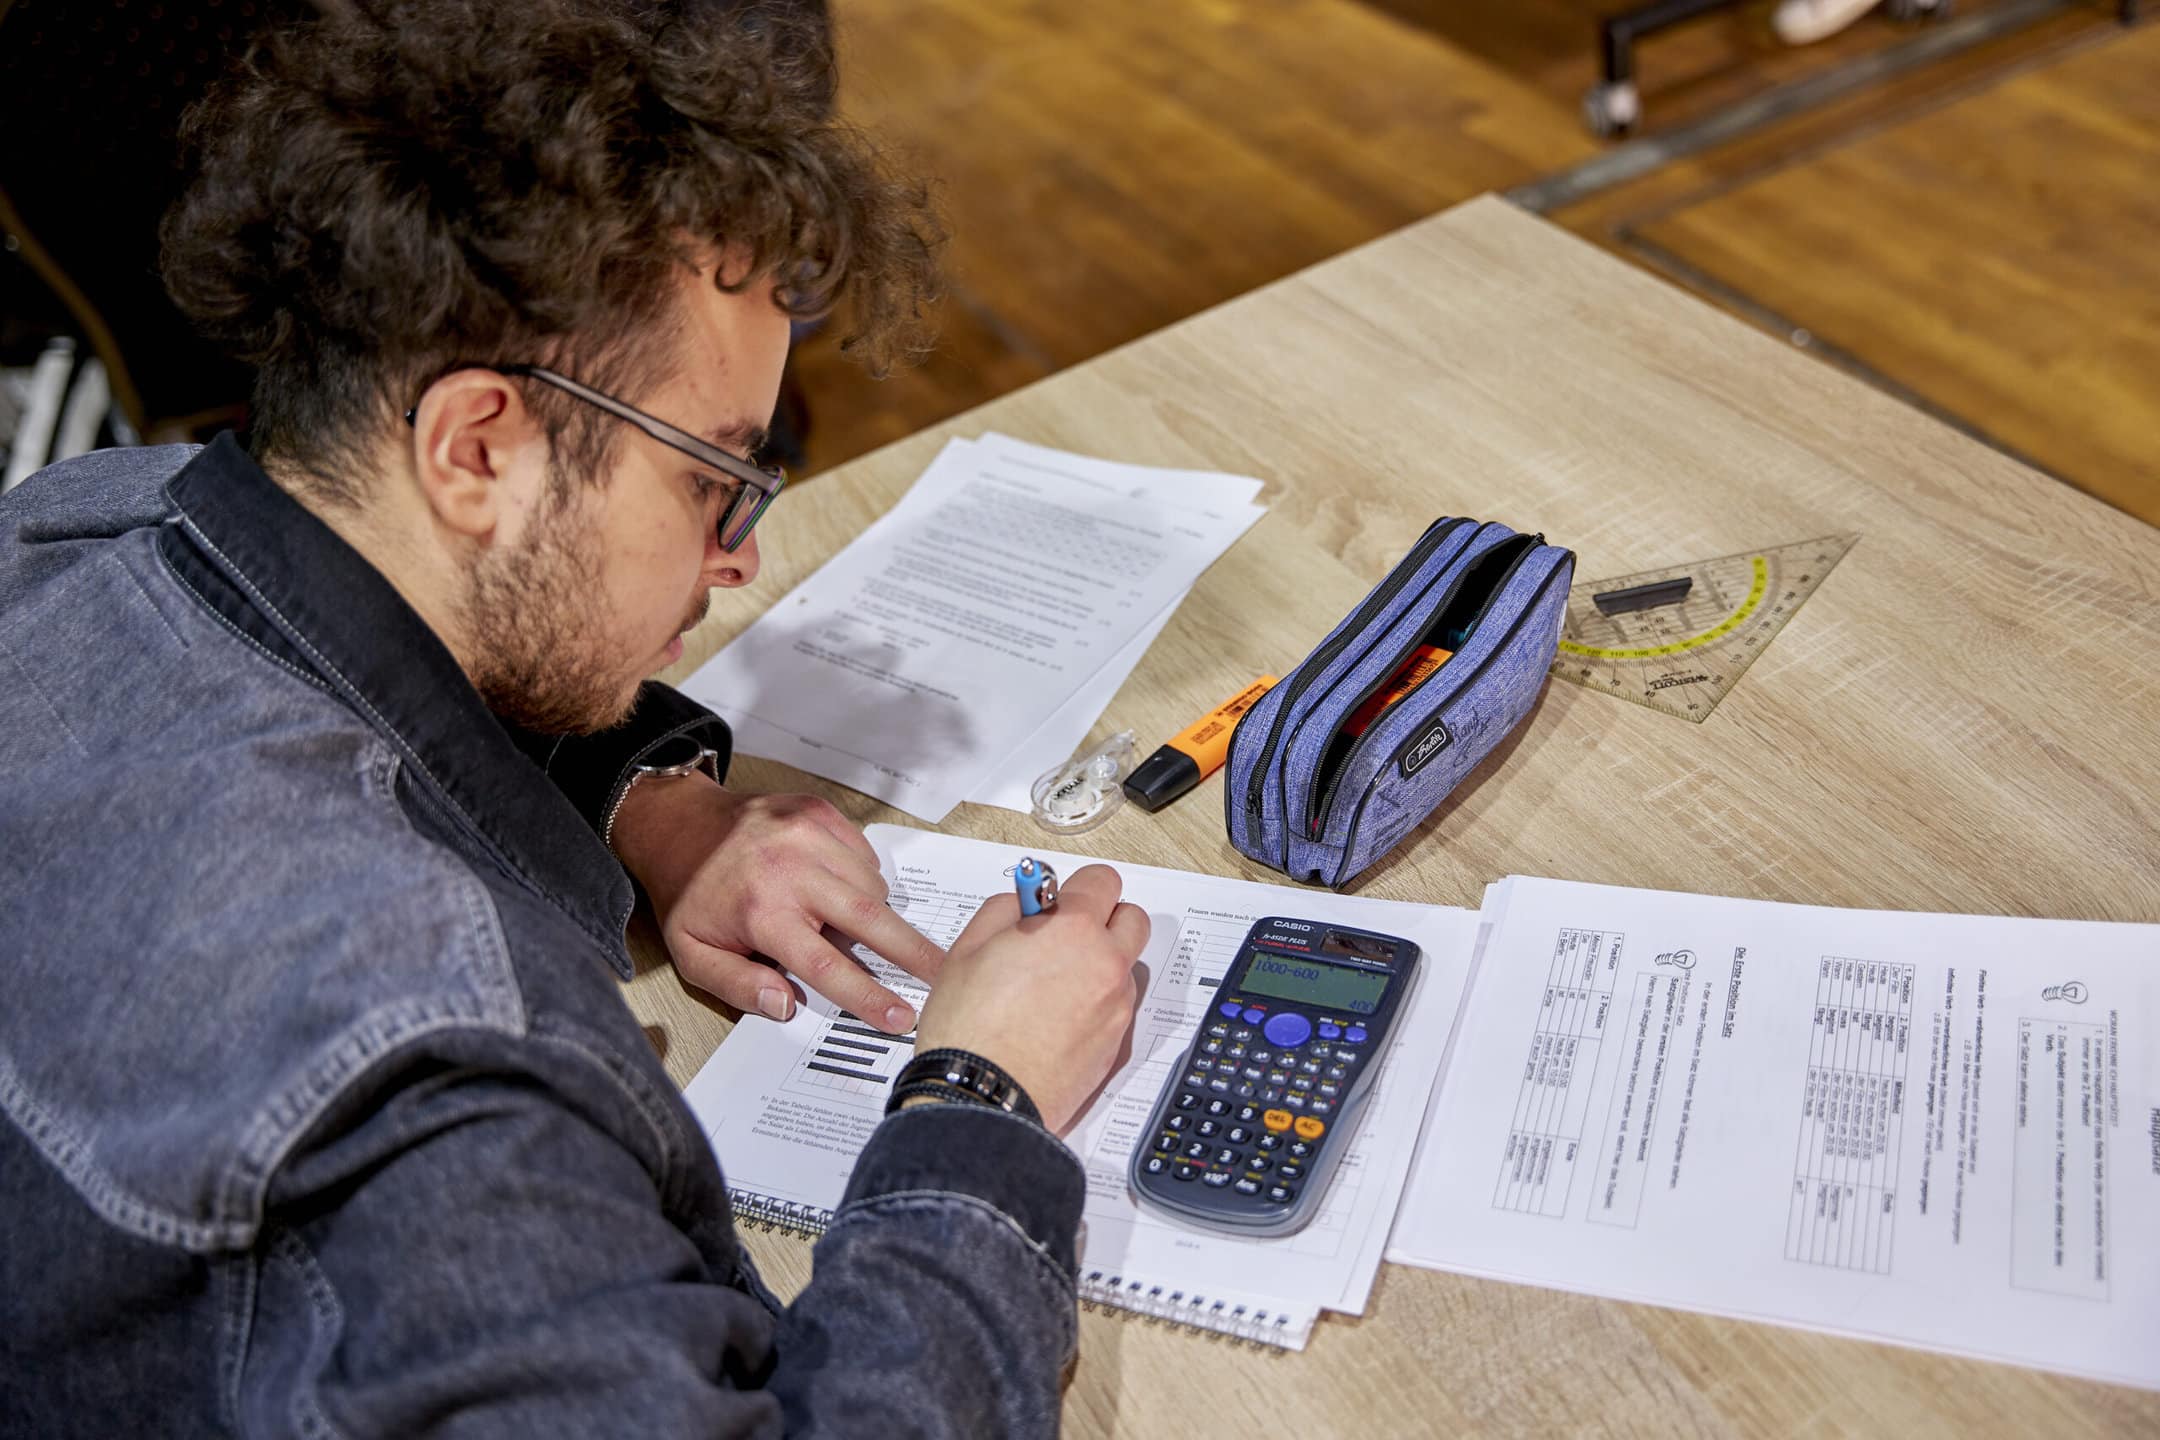 Ein Schüler sitzt an einem Tisch und arbeitet konzentriert an einer Rechenaufgabe, vor ihm liegen Arbeitsblätter, Schreibutensilien und ein Taschenrechner